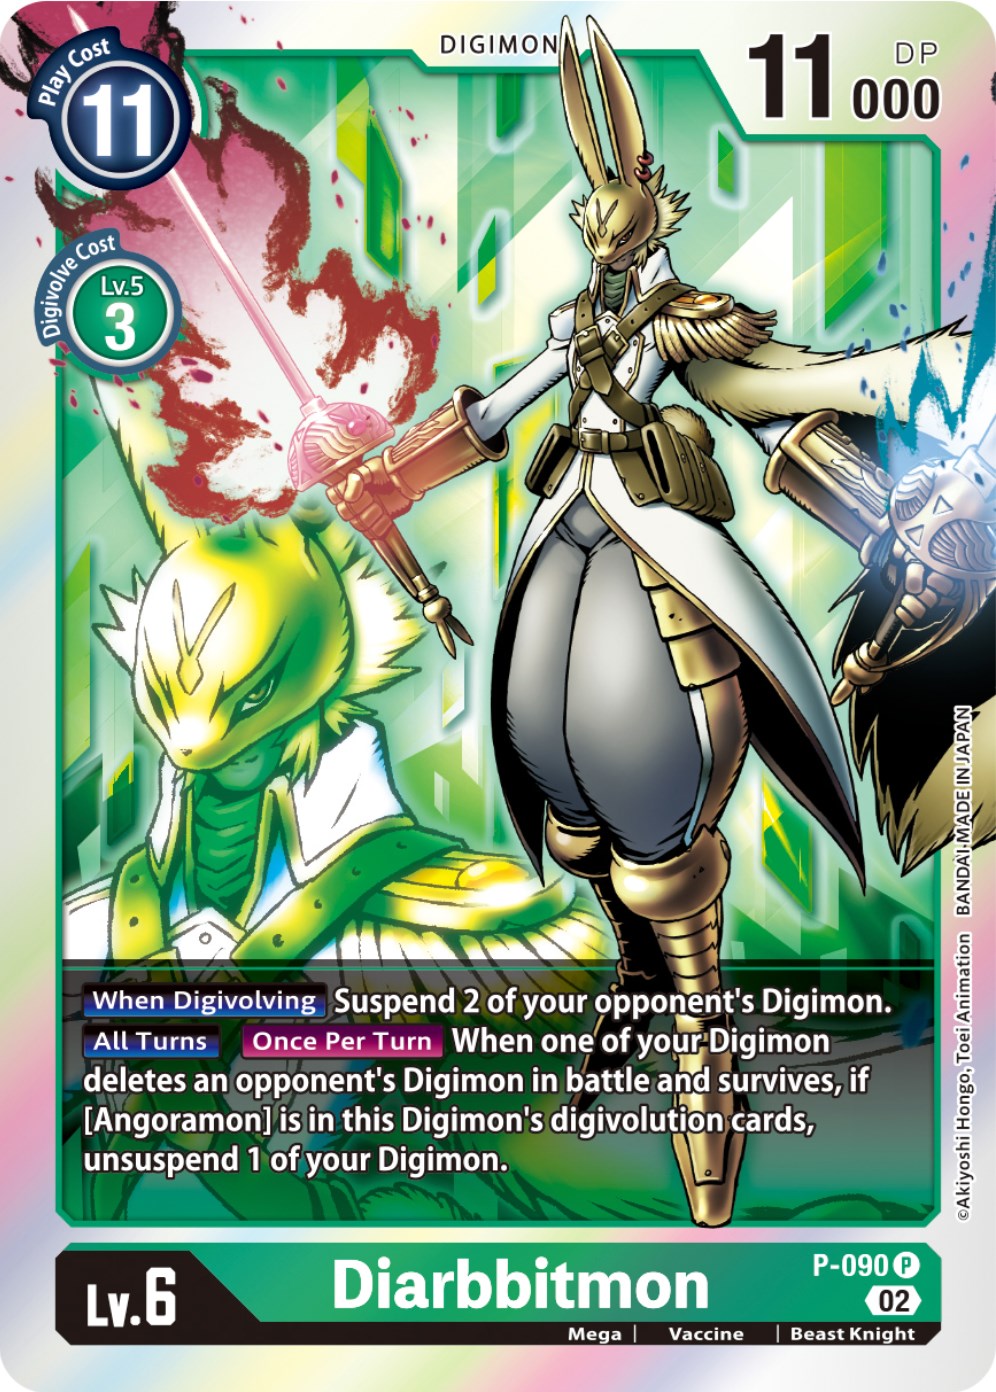 Diarbbitmon - P-090 [P-090] [Digimon Promotion Cards] Foil